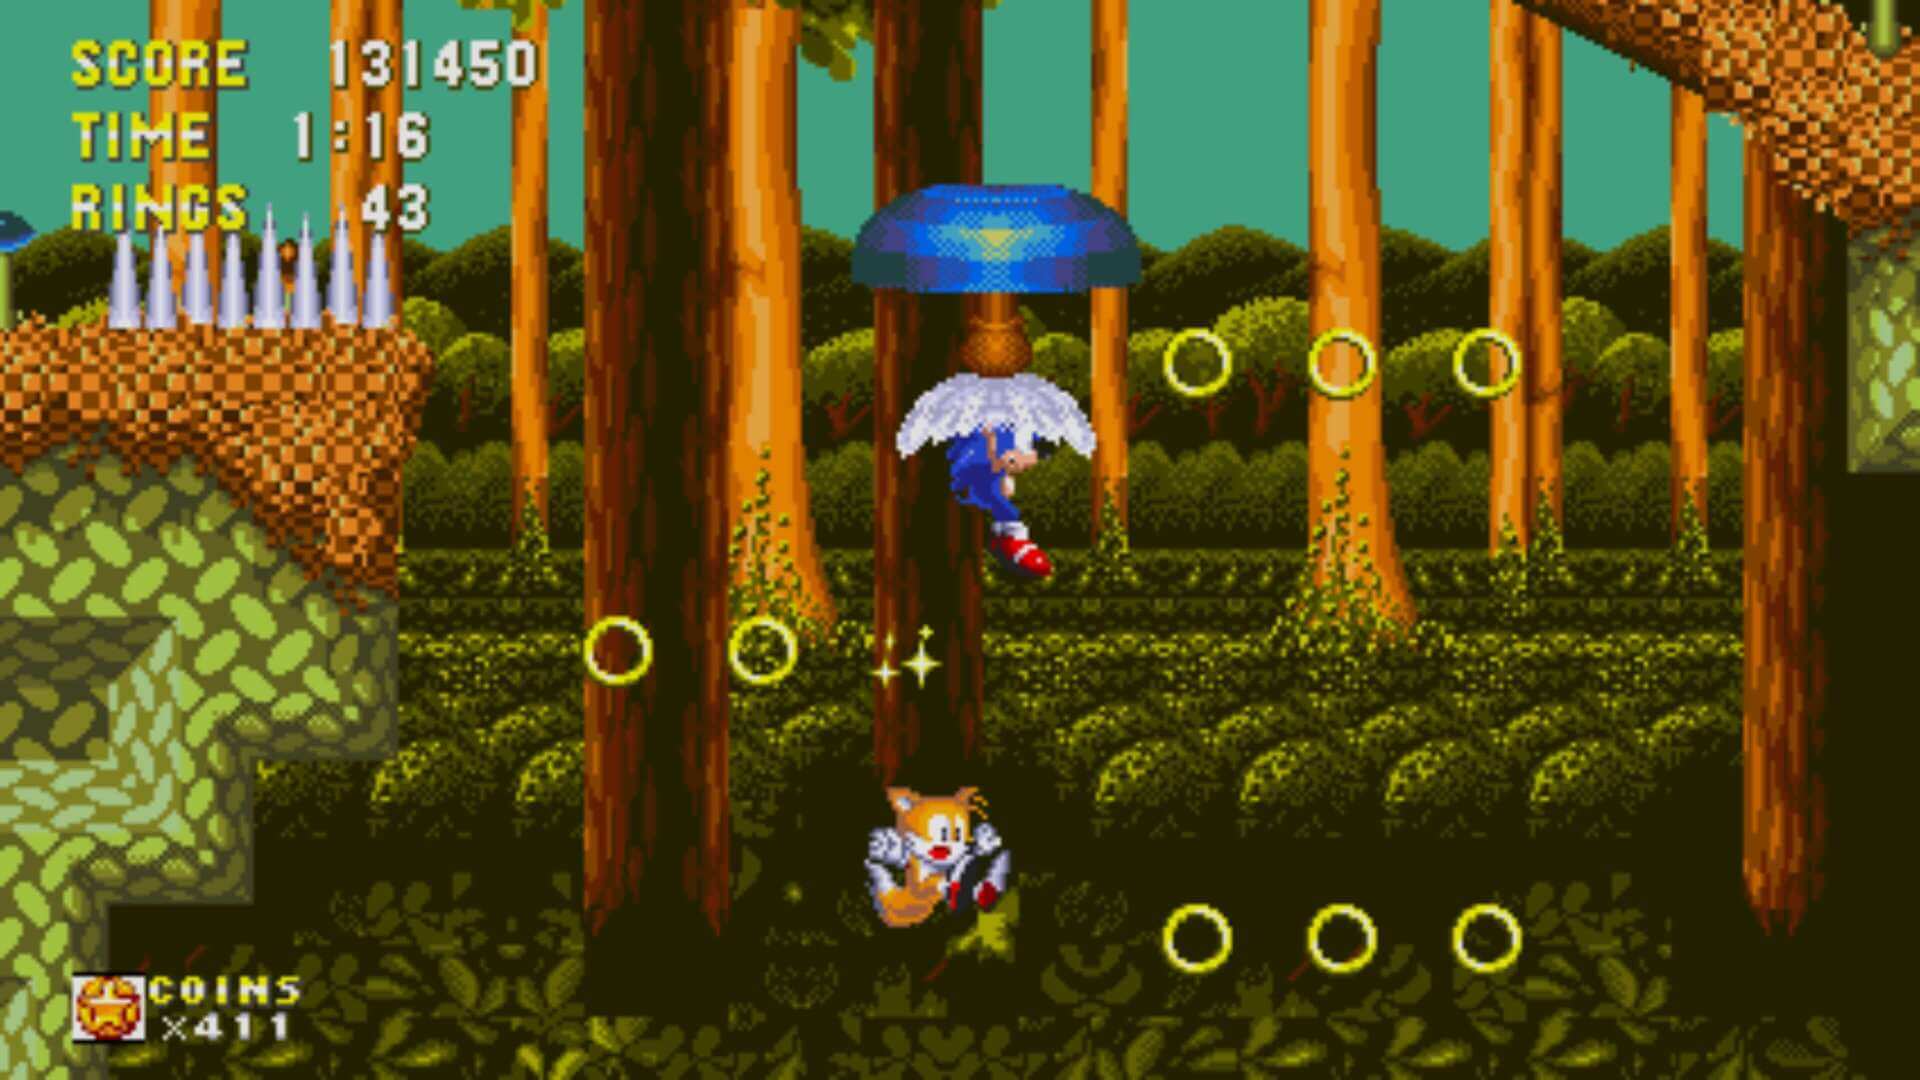 Sonic 3 & Knuckles – Dois jogos uma única história e a misteriosa  contribuição do rei do pop! - POPSFERA